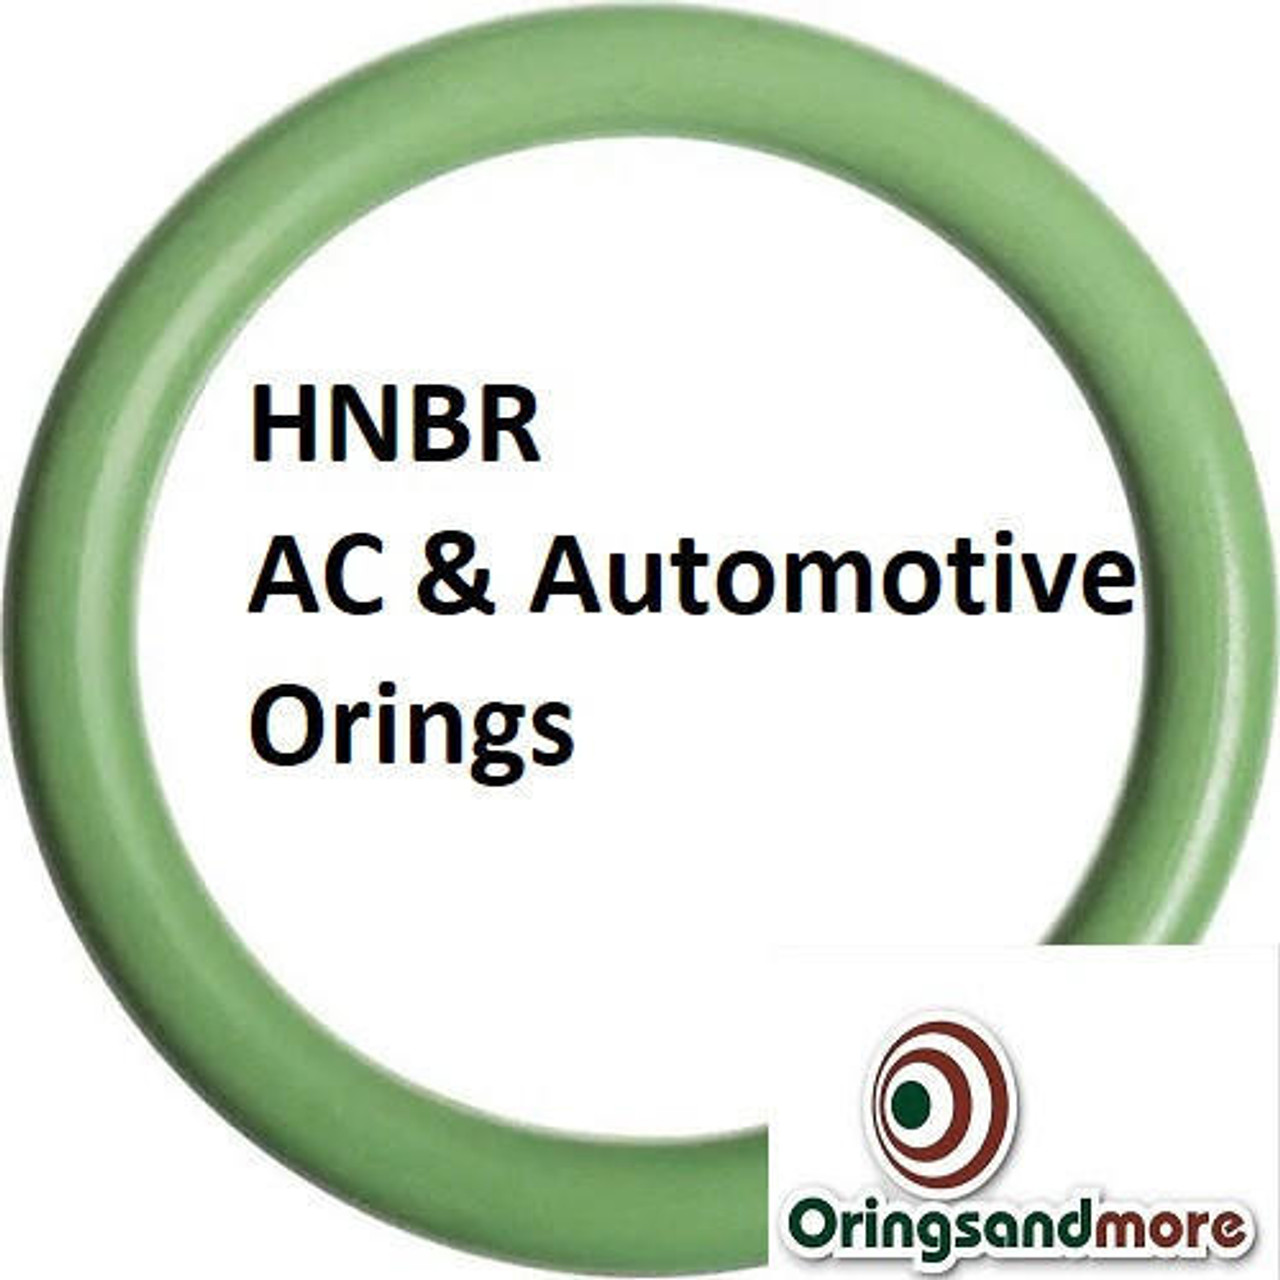 HNBR Orings  # 104-70D Green  Minimum 20 pcs